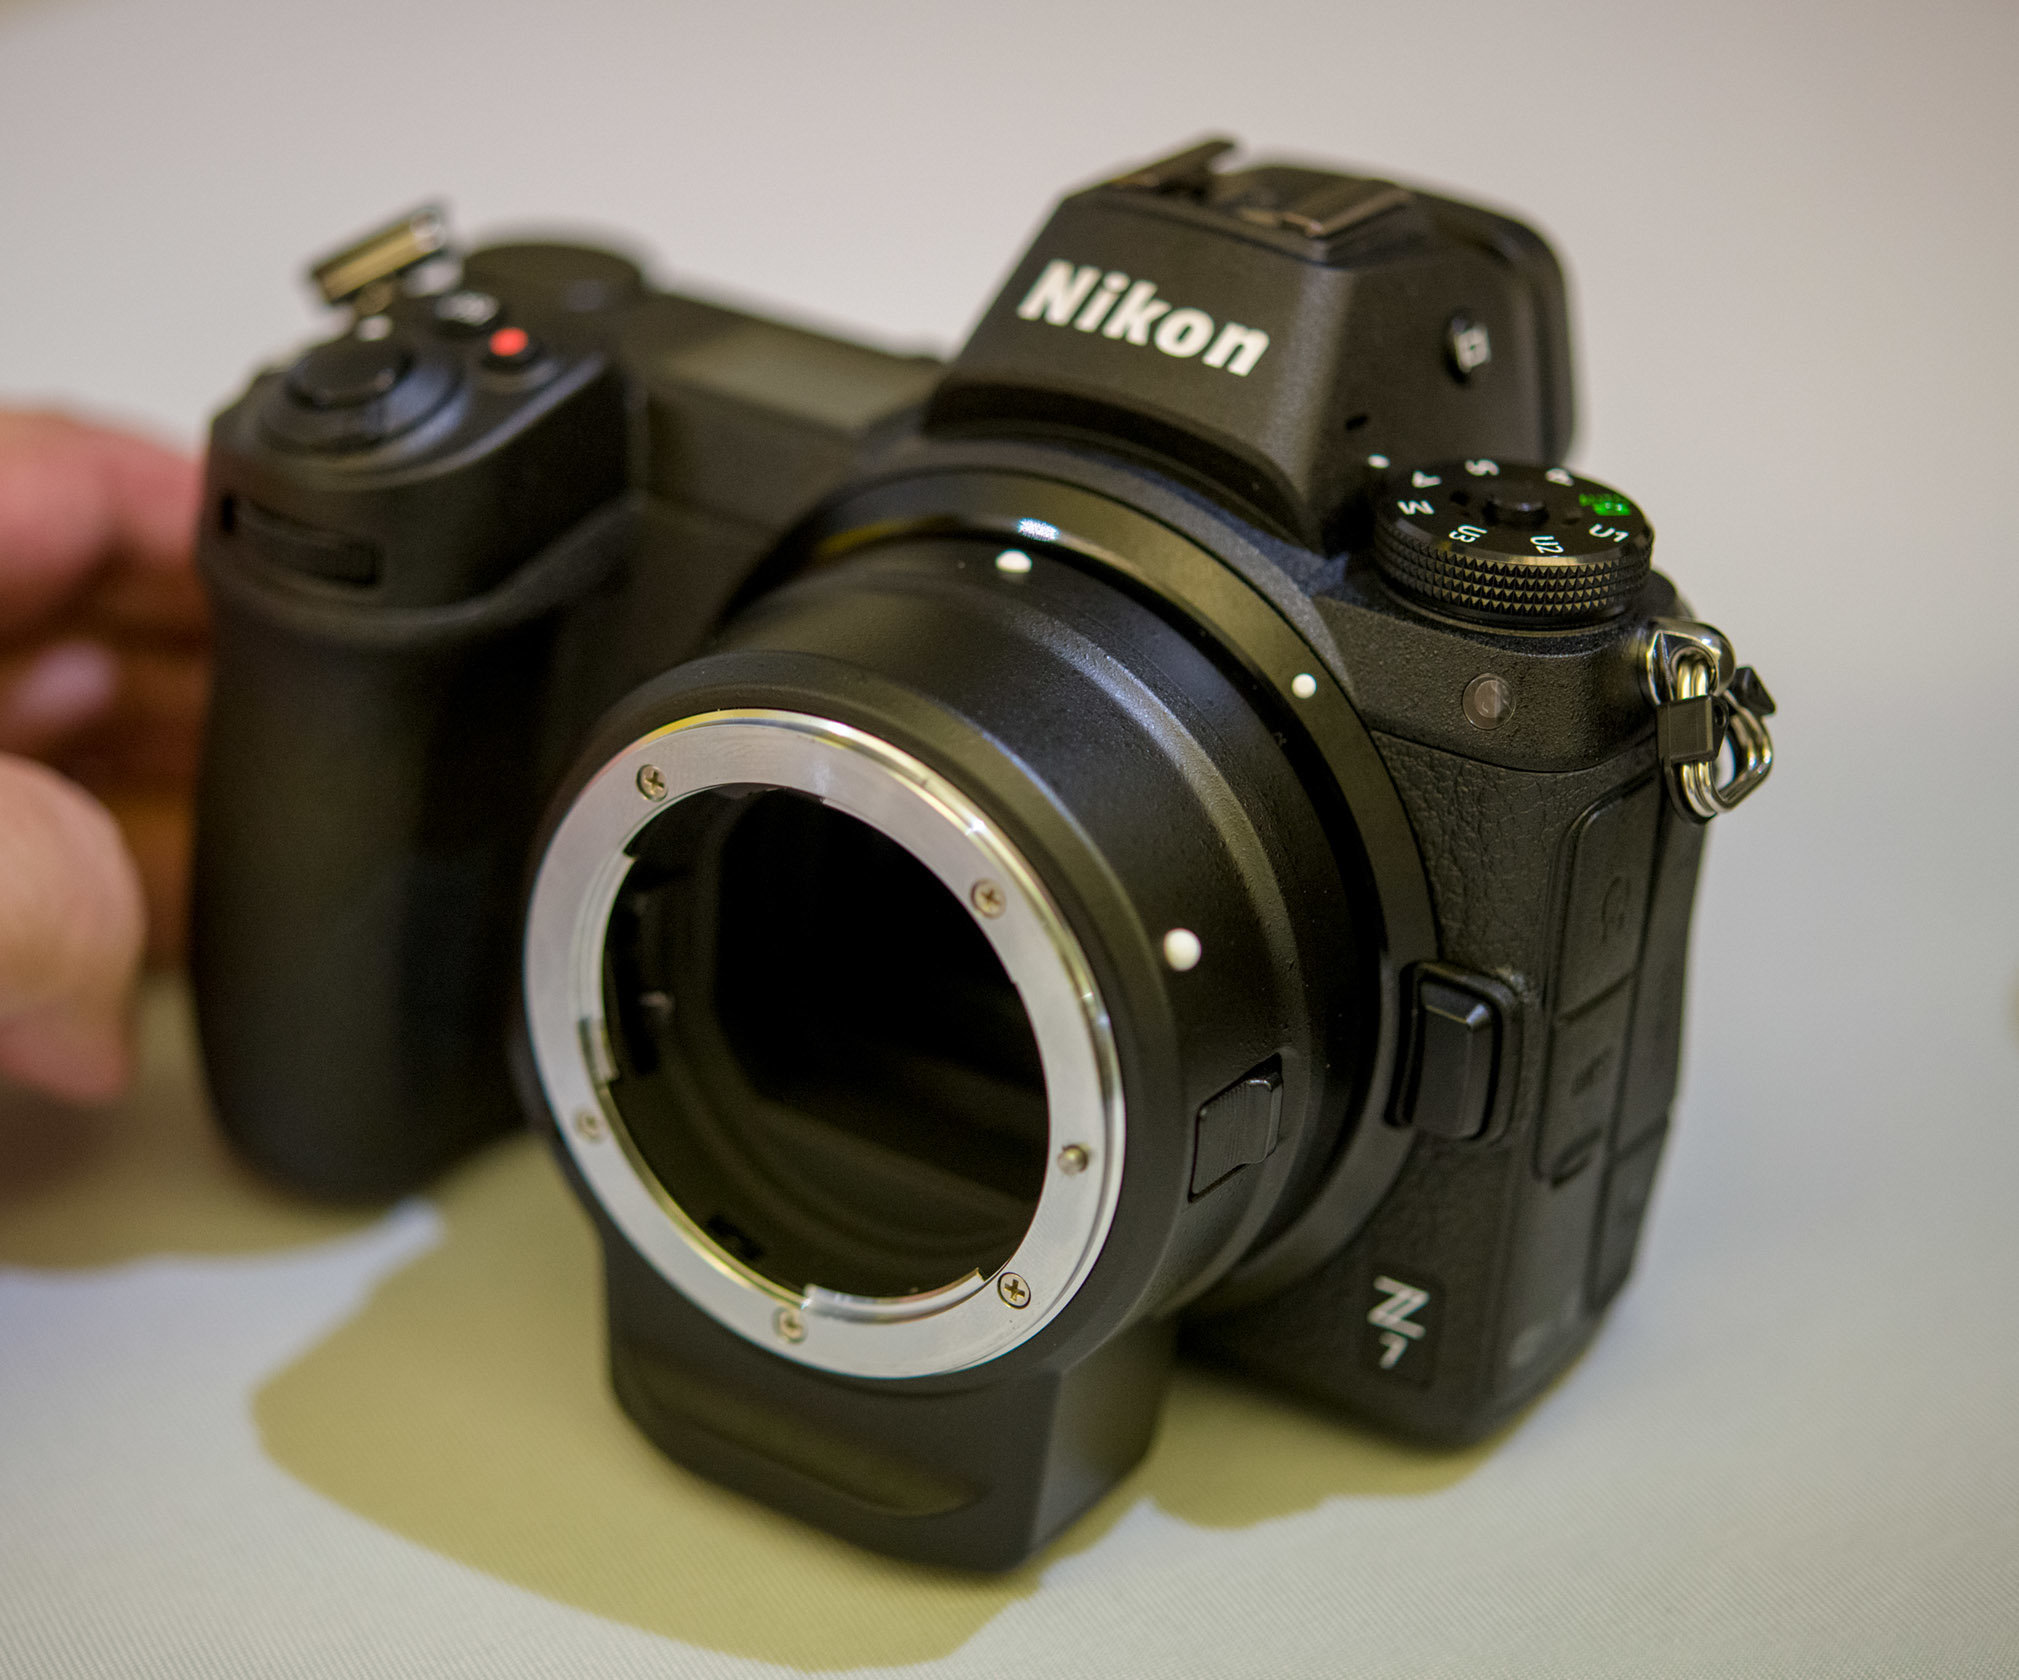 Maggiori informazioni su "Nikon FTZ : 133 grammi di miracolo tecnologico (test/prova)"